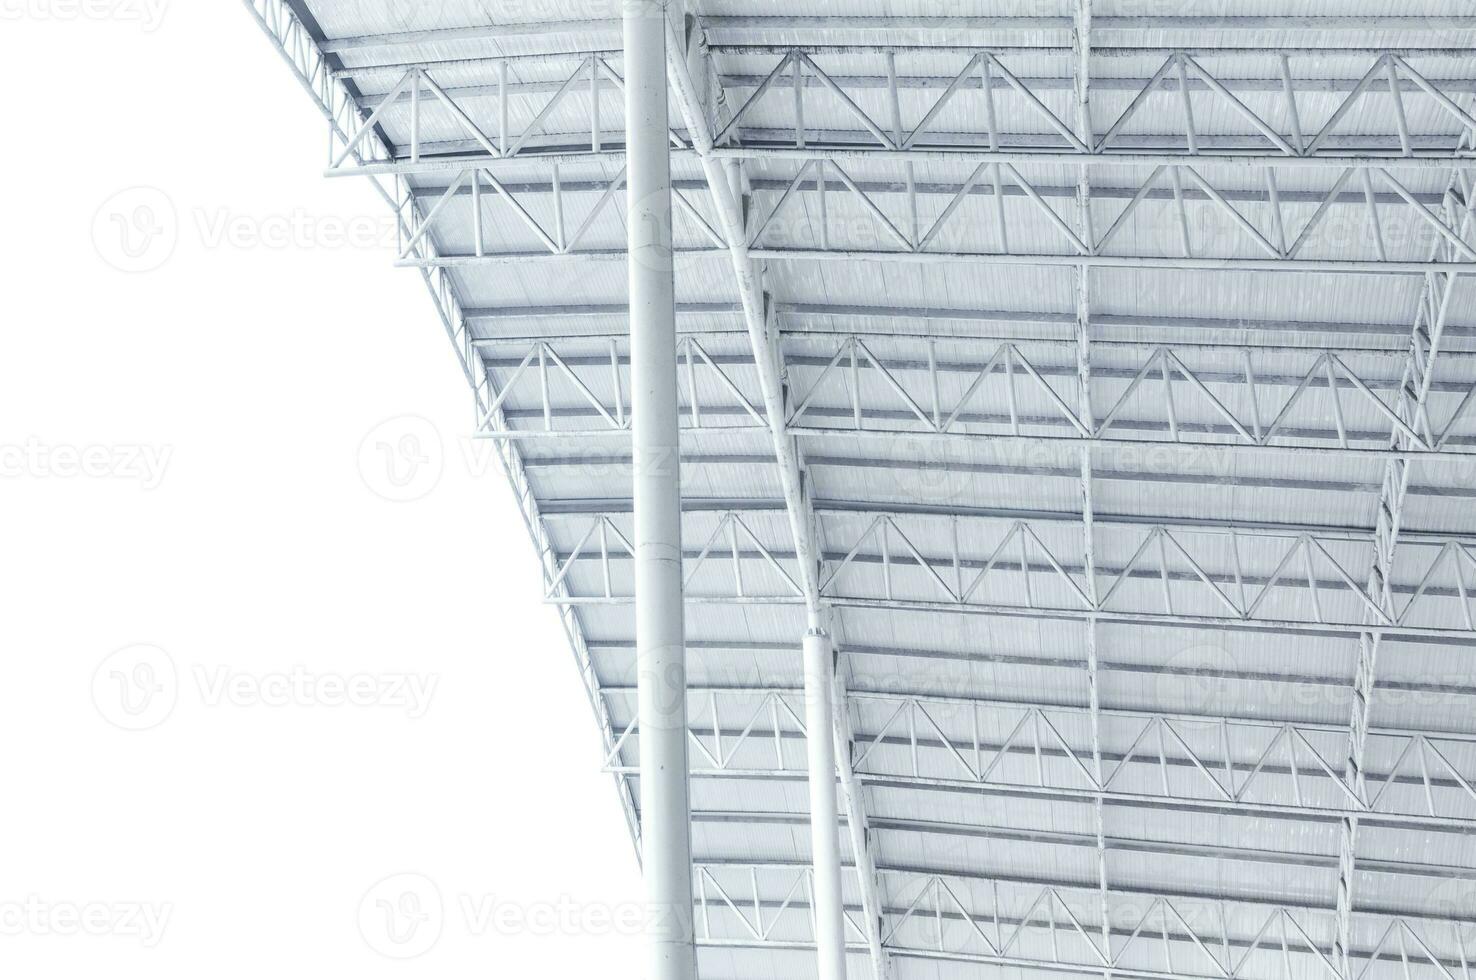 fardo de estrutura de aço grande, estrutura de telhado e chapa metálica no canteiro de obras foto